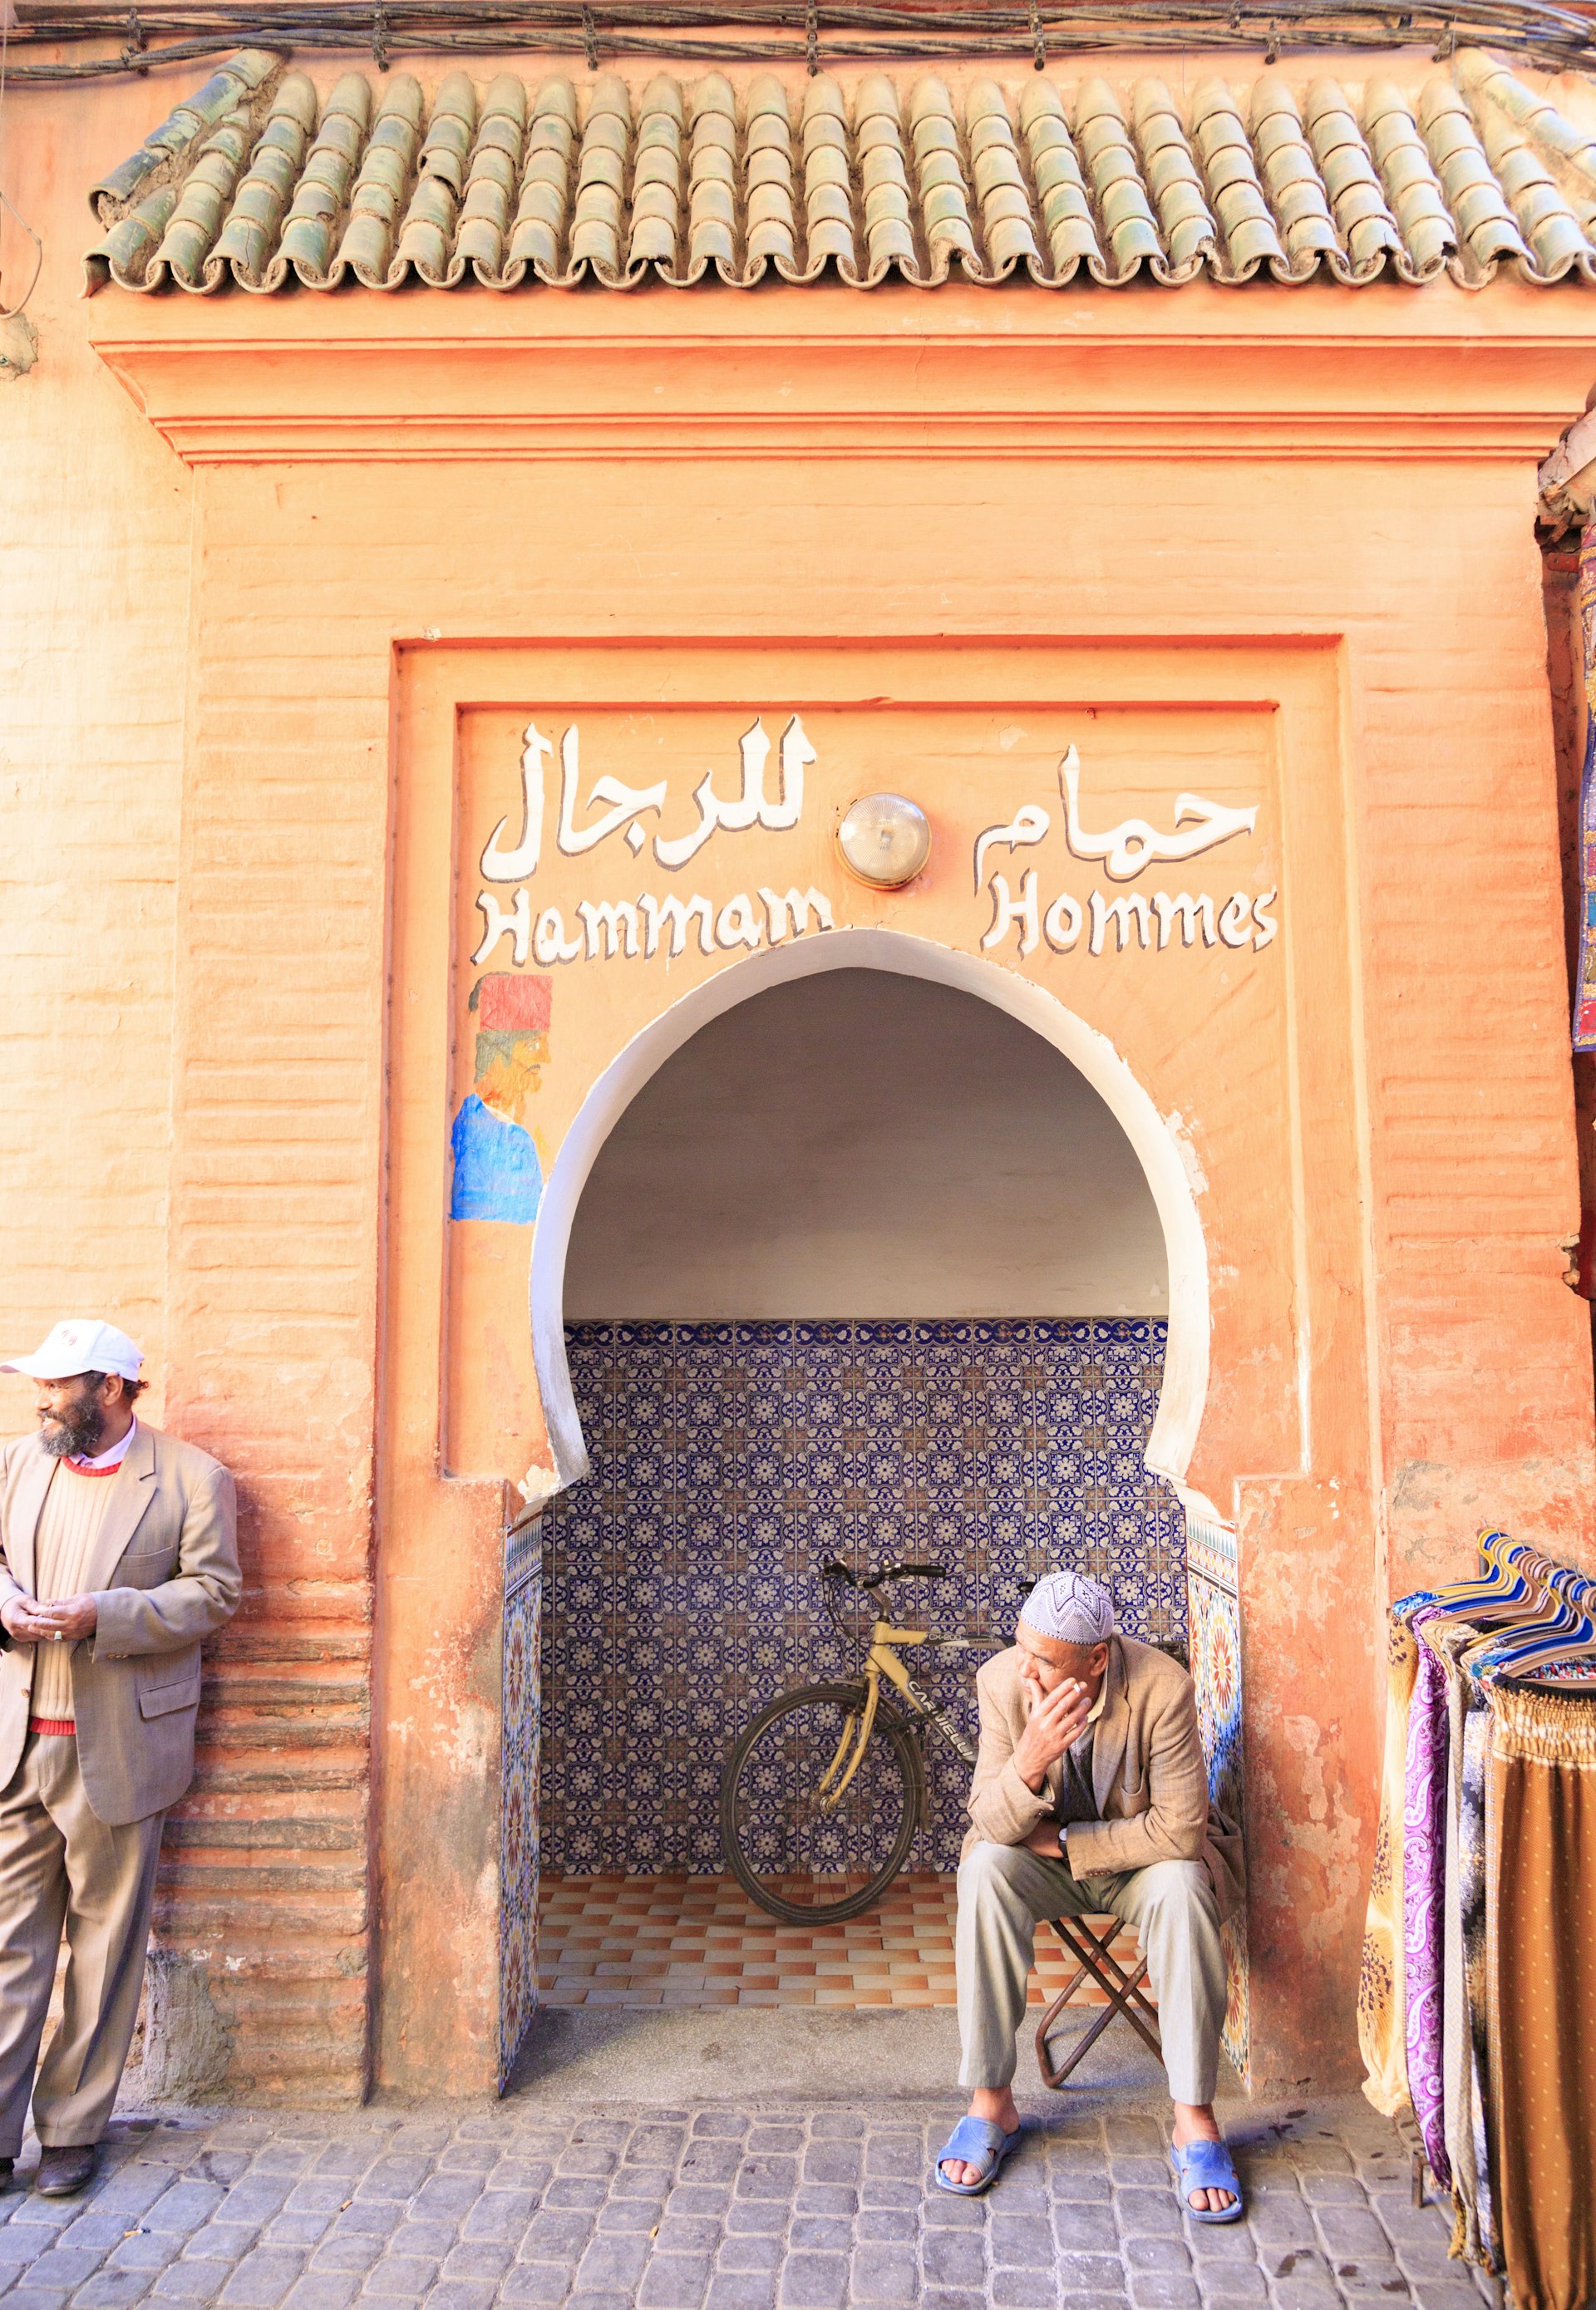 Entrance to a men's hammam in Marrakesh, Morocco